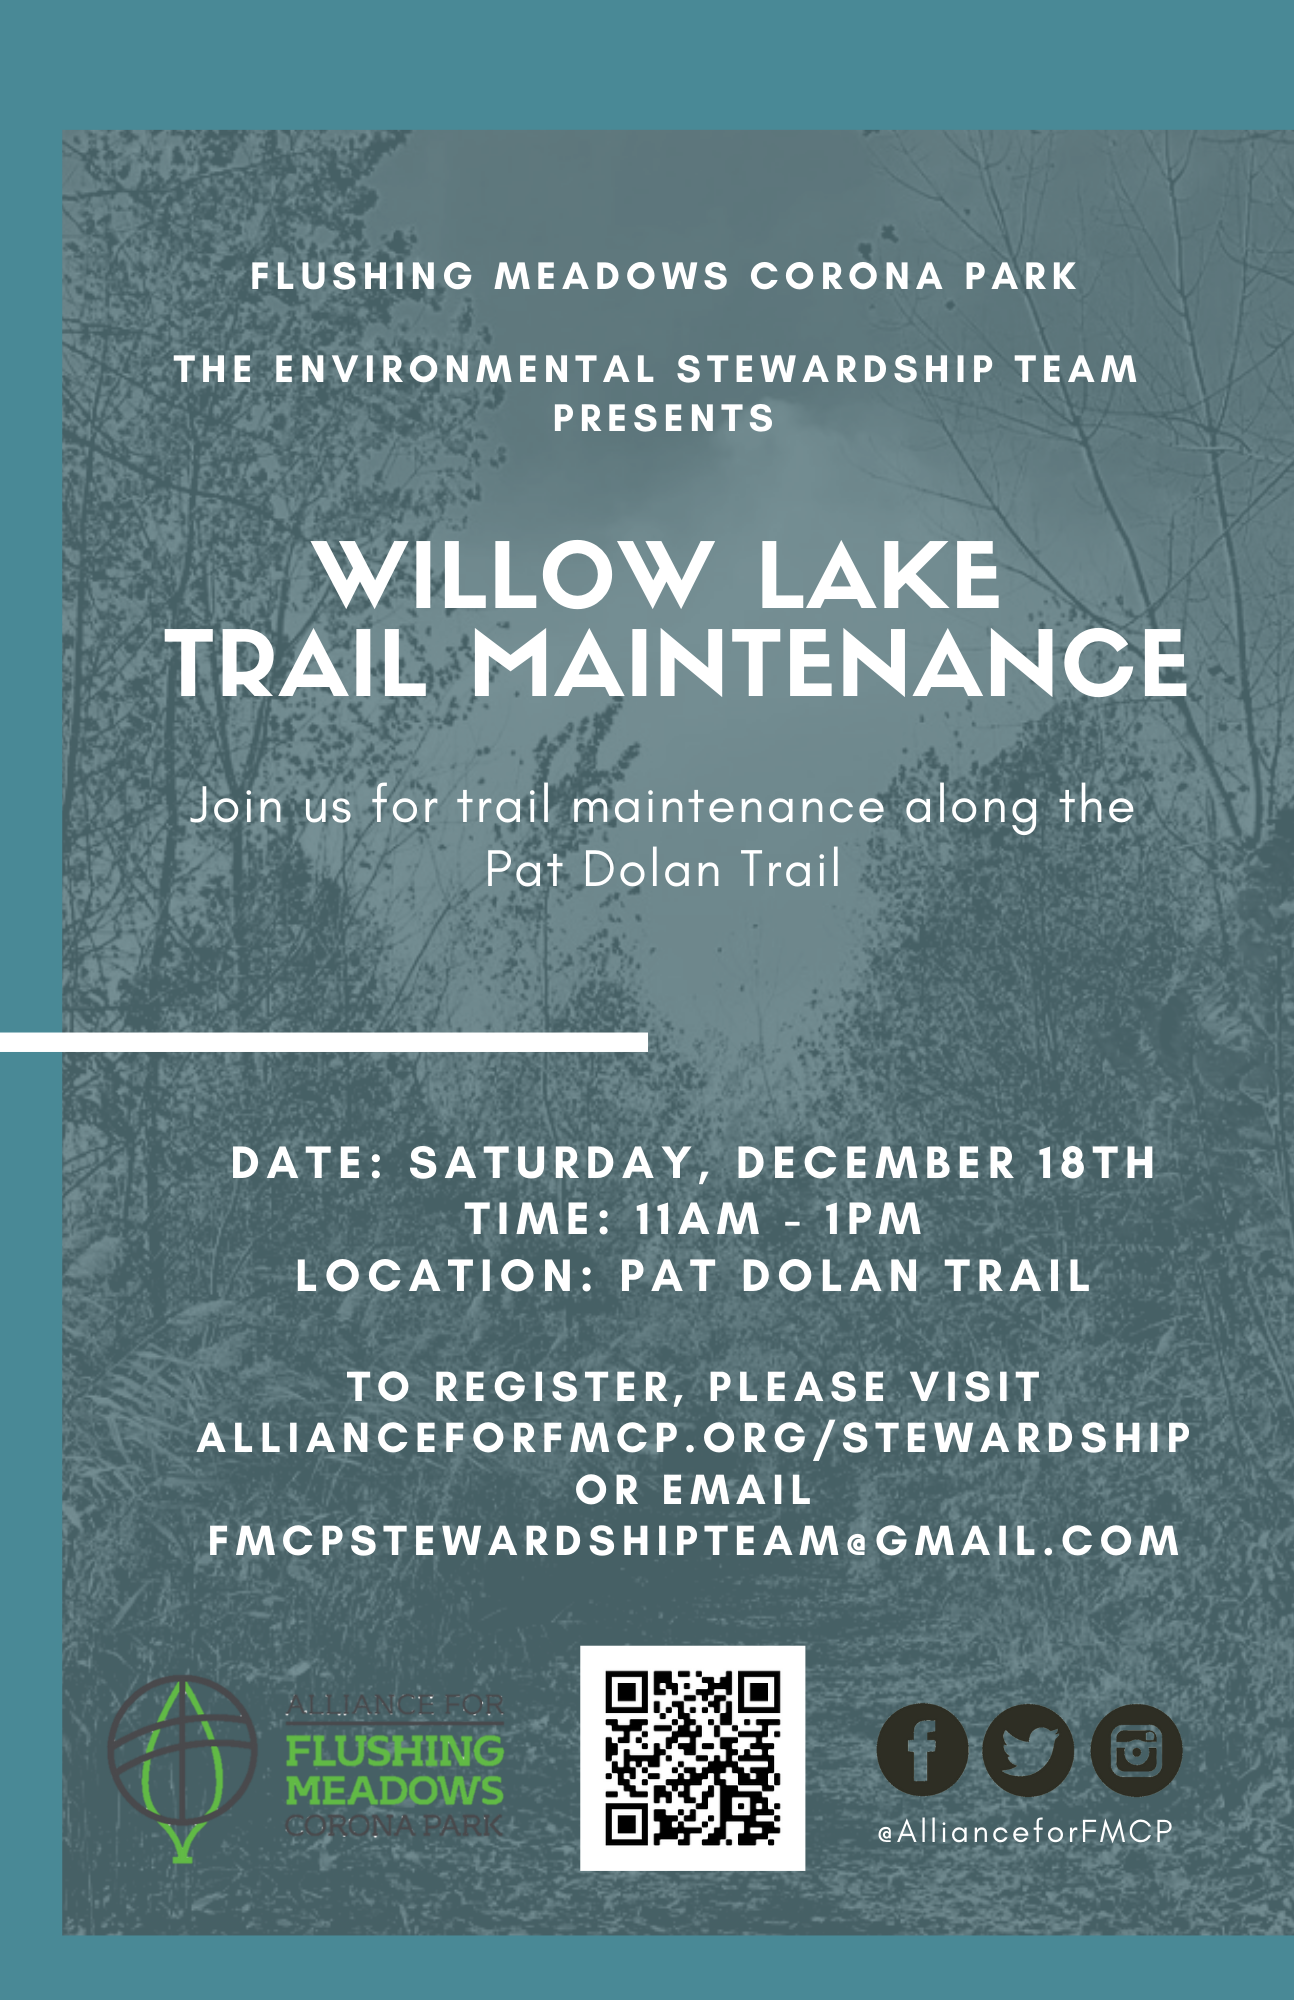 Willow Lake Trail Maintenance Volunteer Event @ Willow Lake